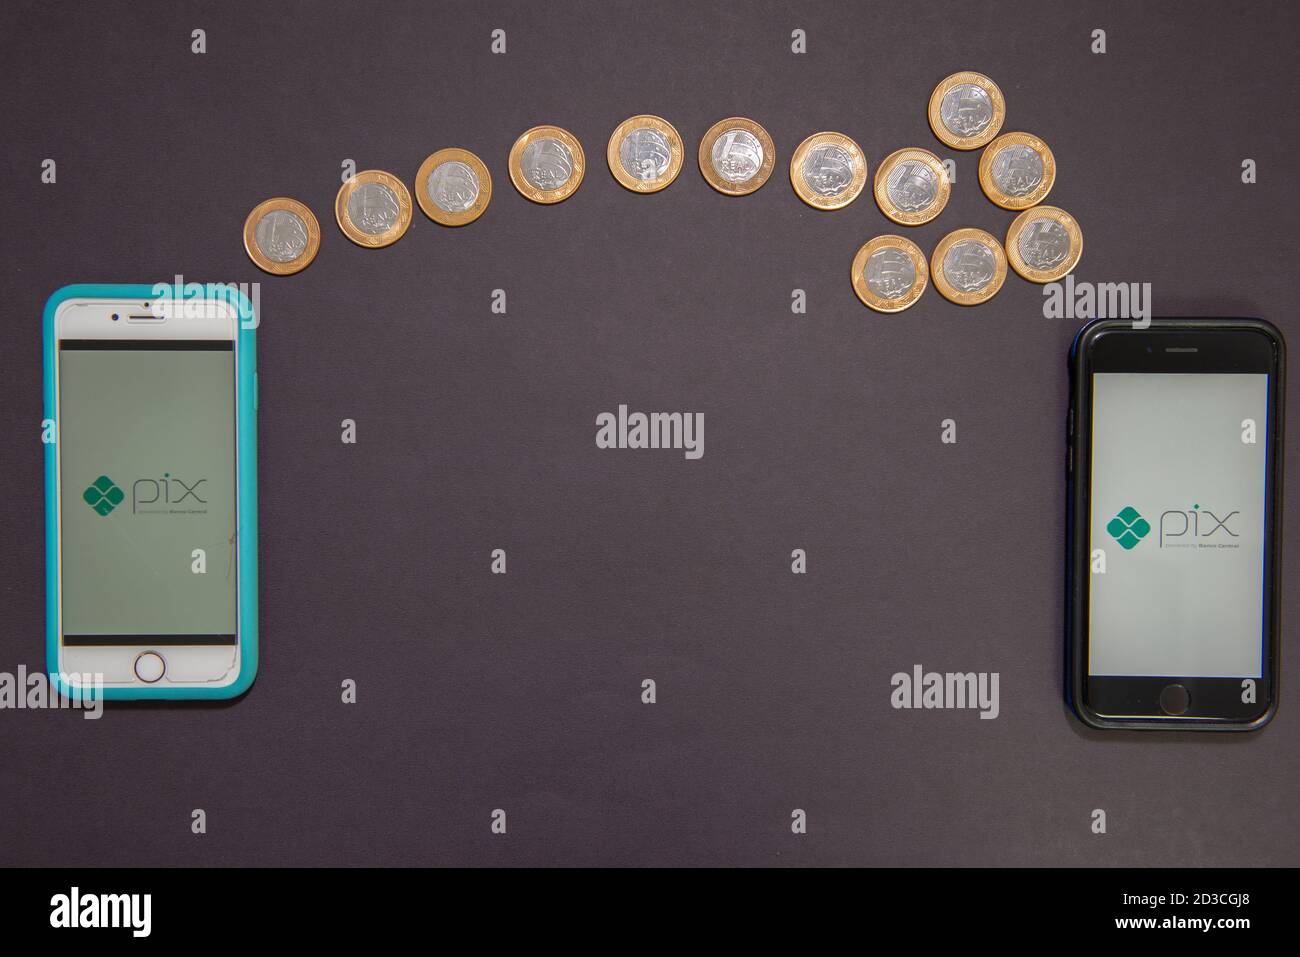 Florianopolis, Brésil. 07/10/2020: Flèche faite par 1 pièces de monnaie réelles montrant le transfert d'argent d'un smartphone à un autre. Concept de paiement instantané Banque D'Images